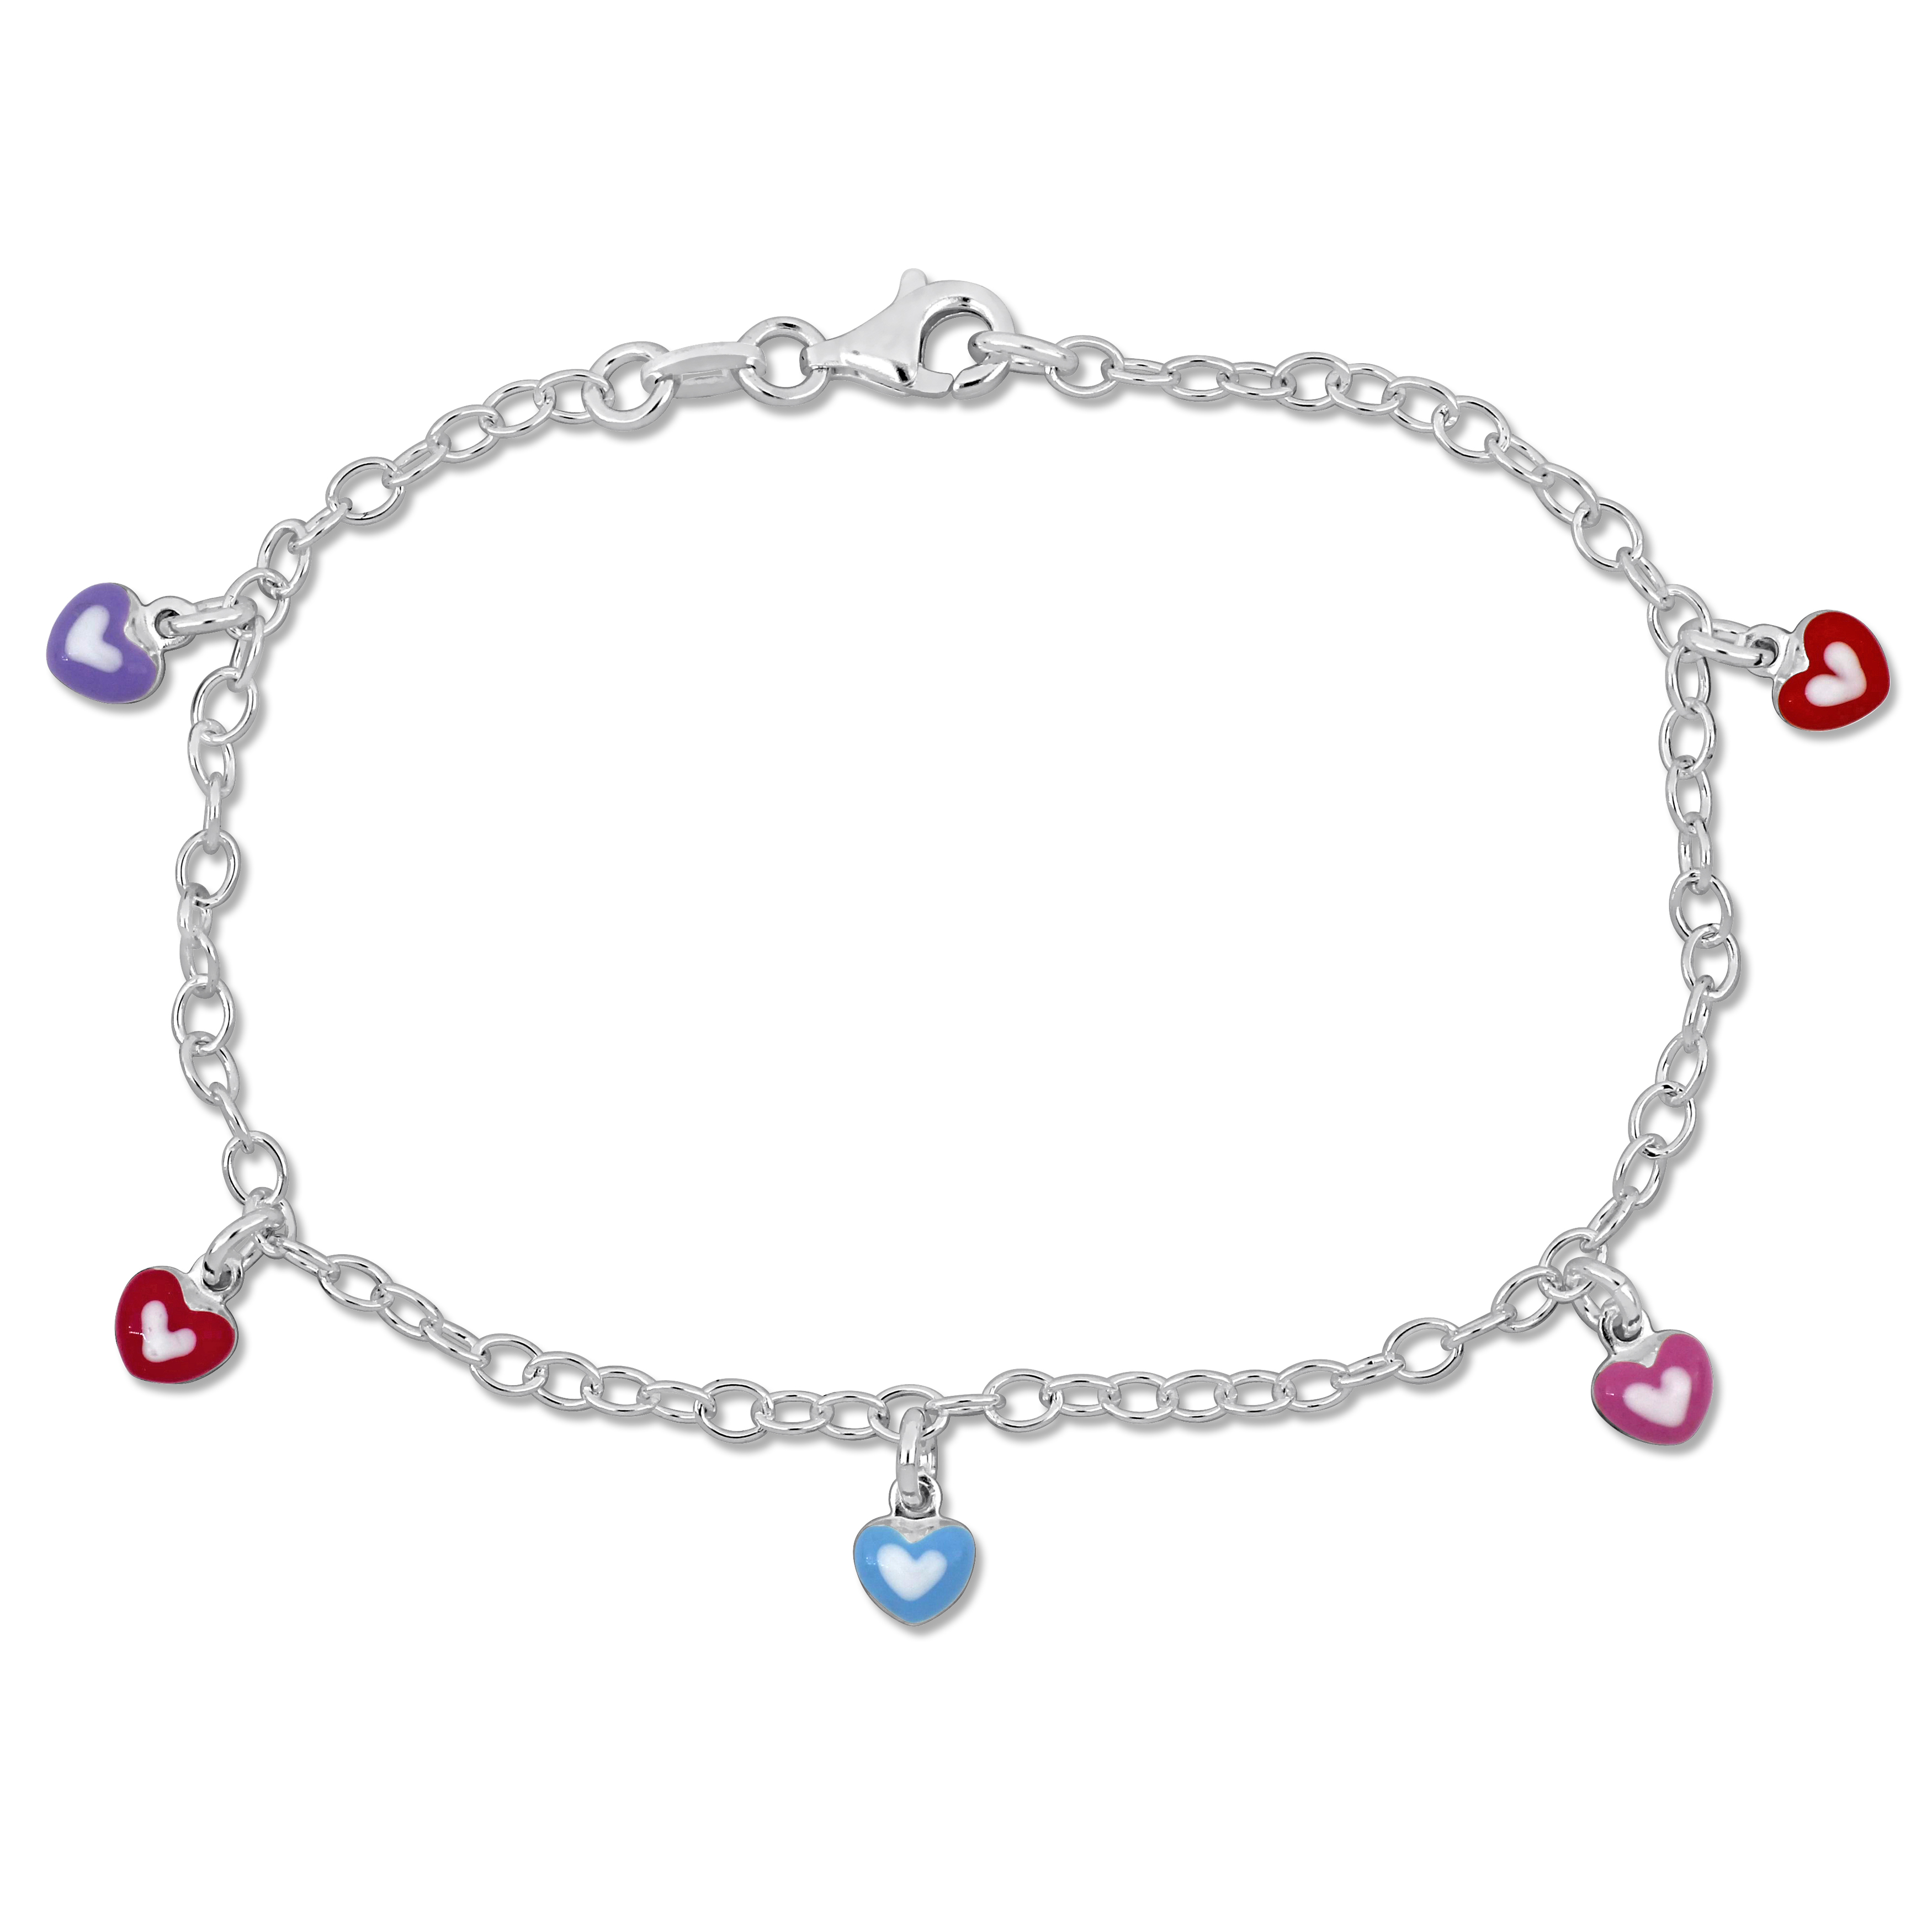 Multi-color Enamel Heart Charm Link Bracelet in Sterling Silver - 7.5 in.